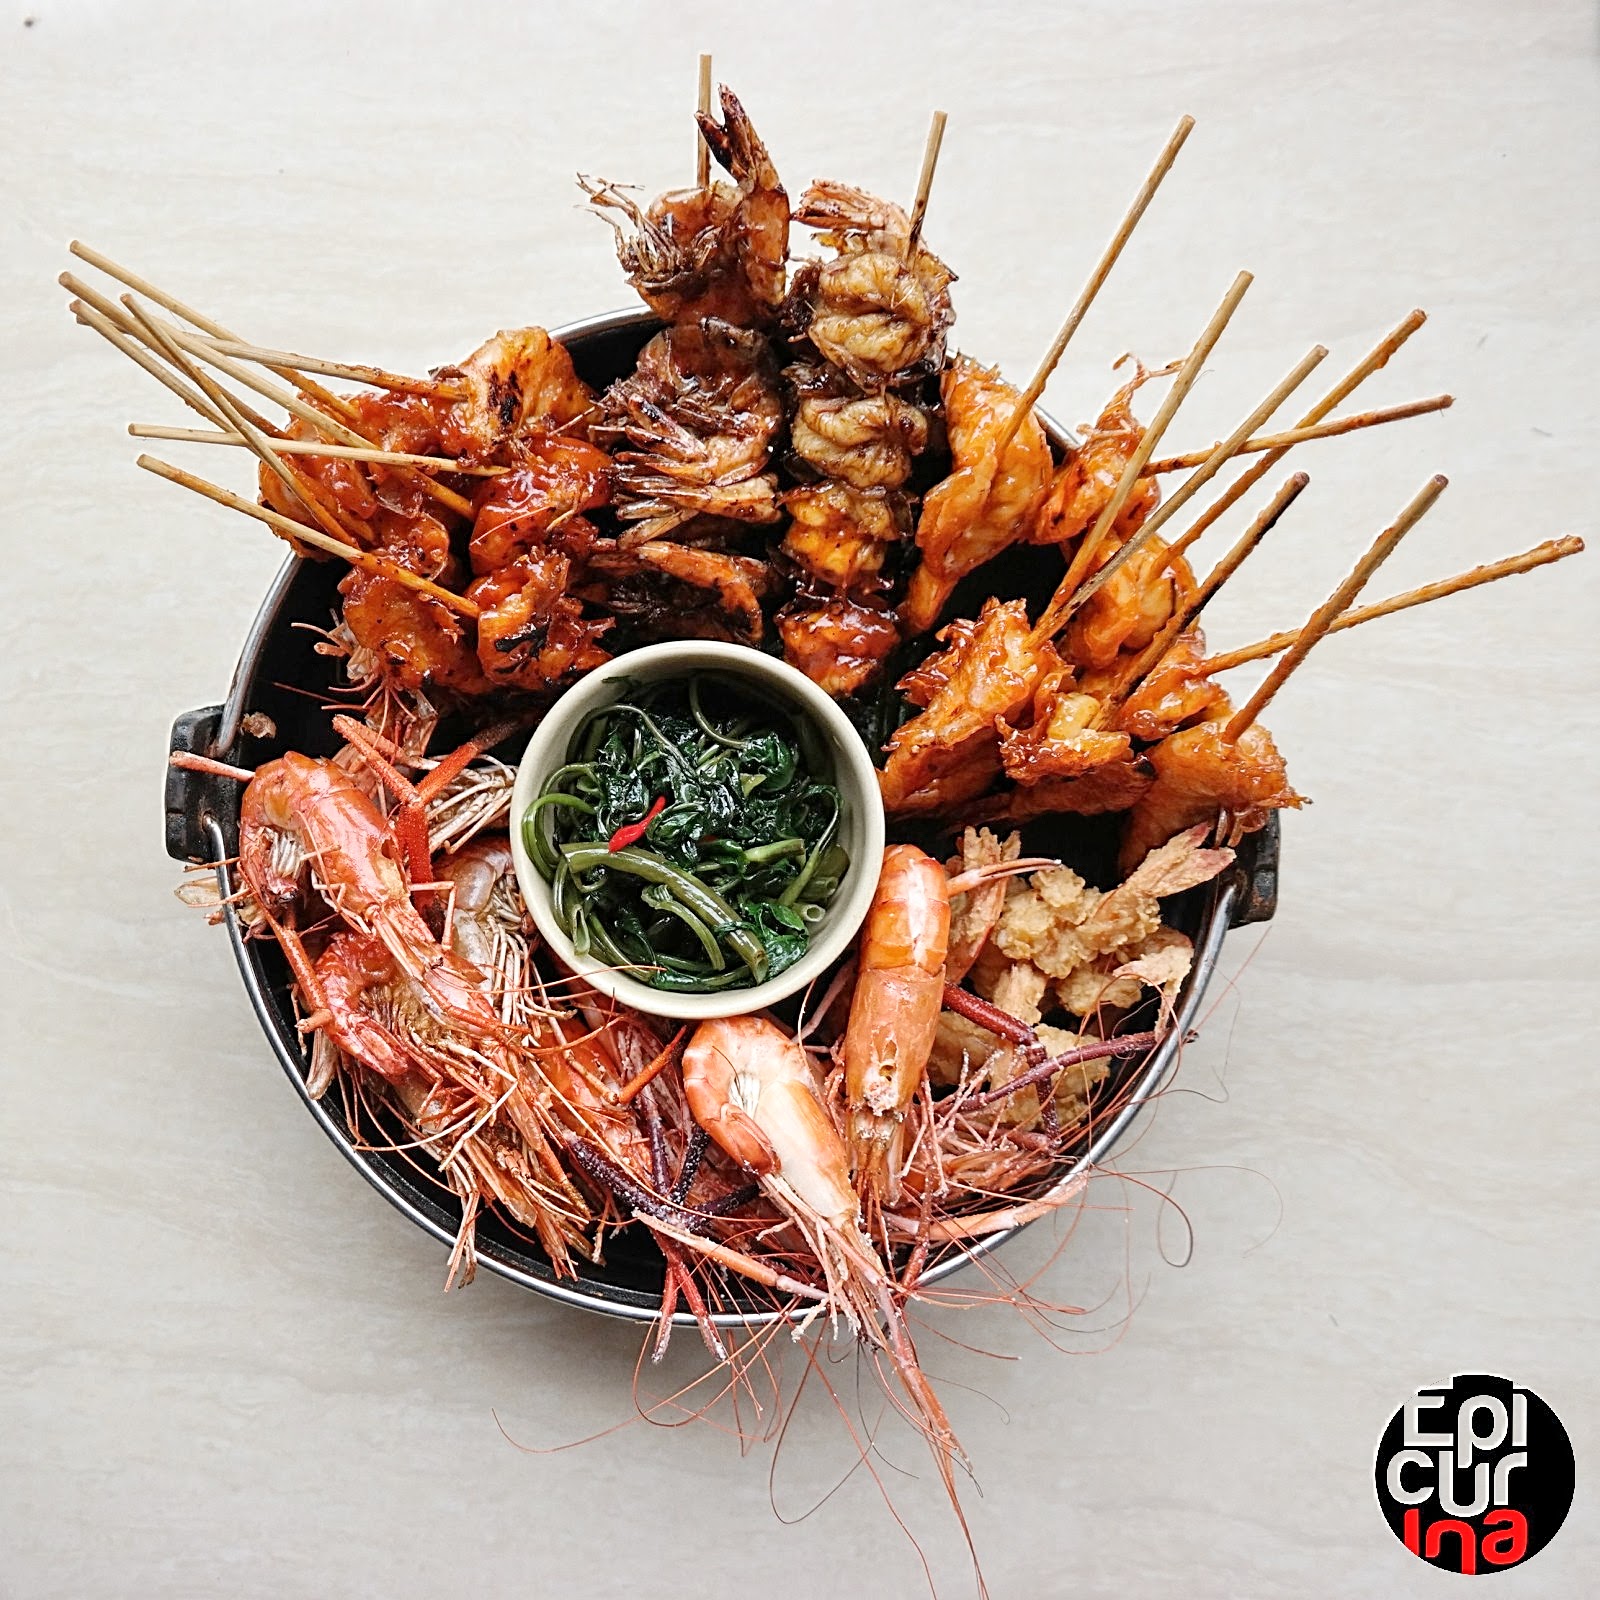 Epicurina - Bali Food Adventure Blog: Top 8 Halal Food in Ubud